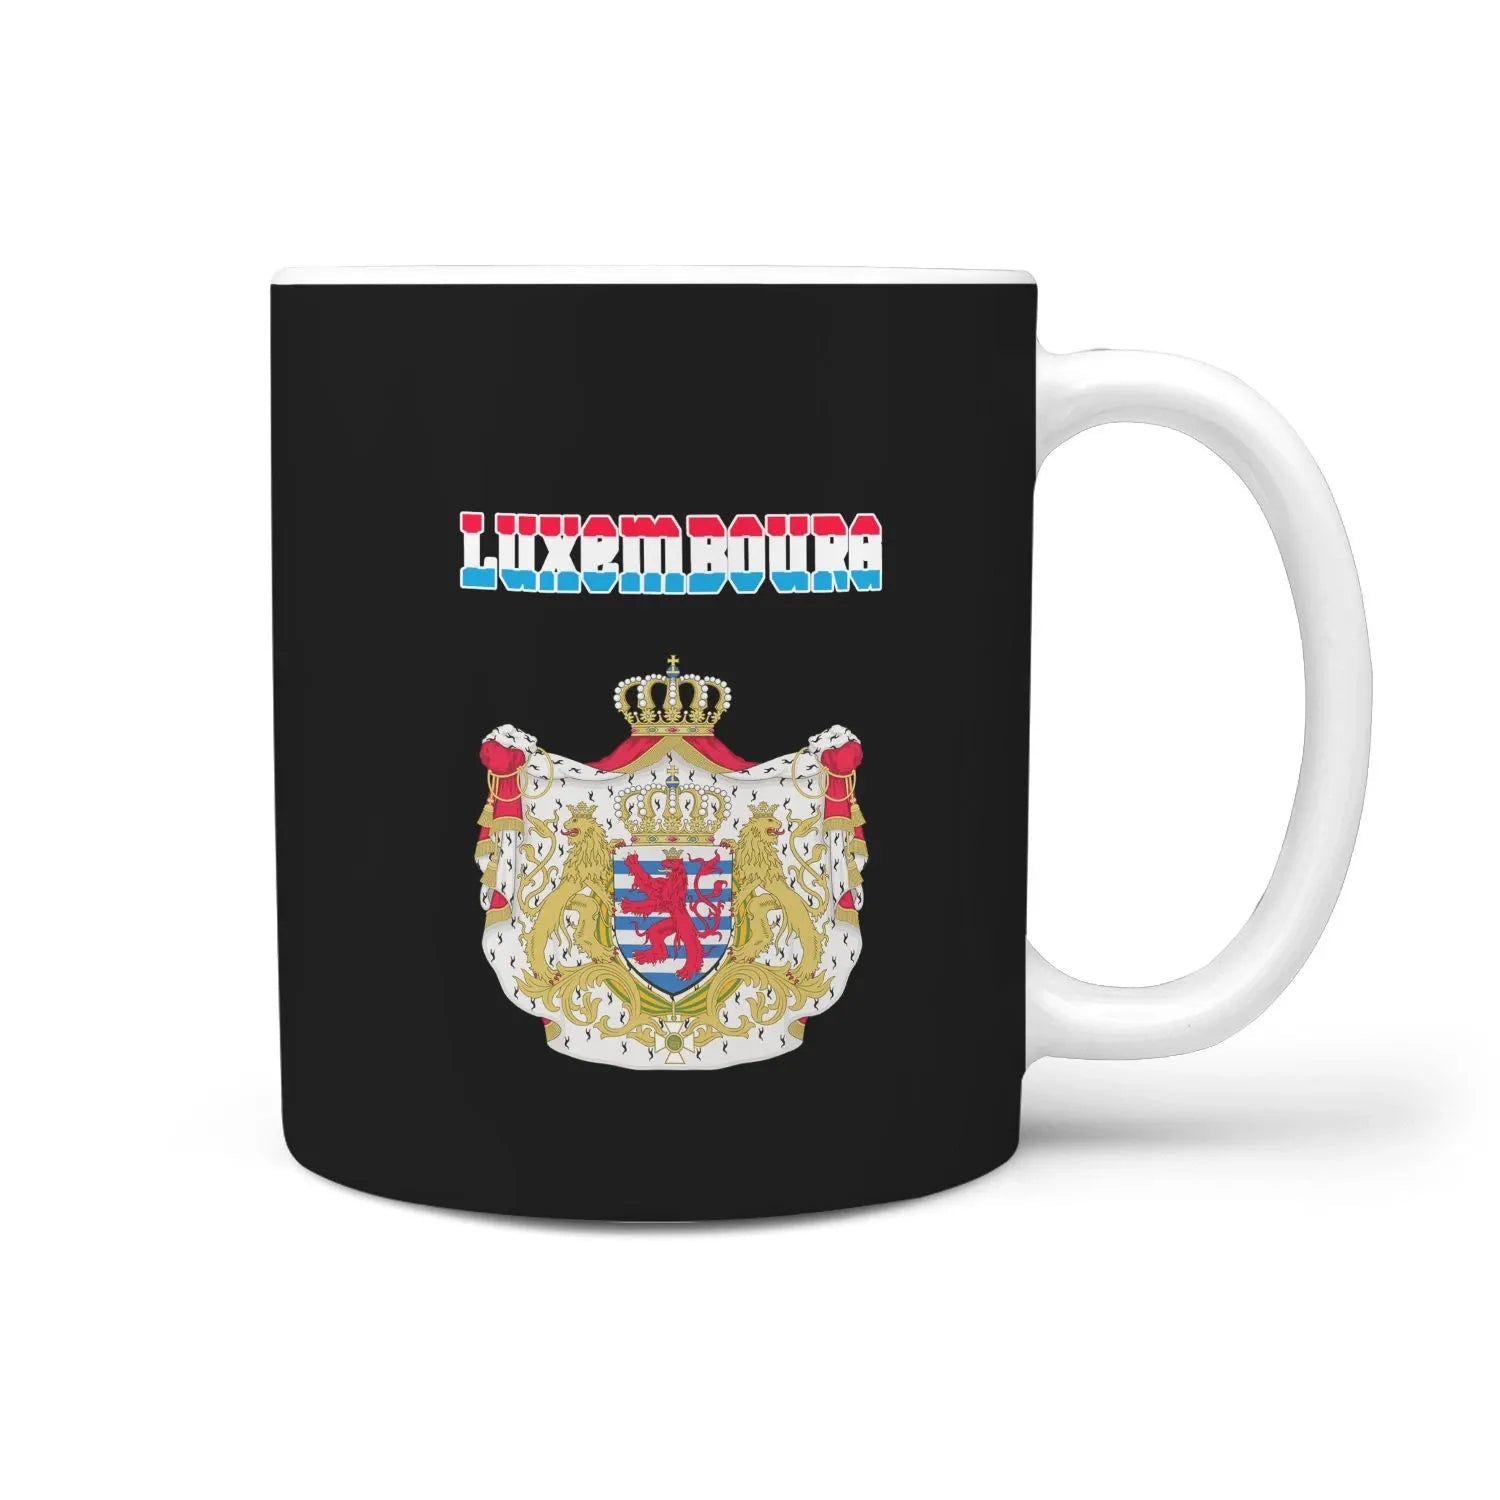 luxembourg-mug-coat-of-arm-name